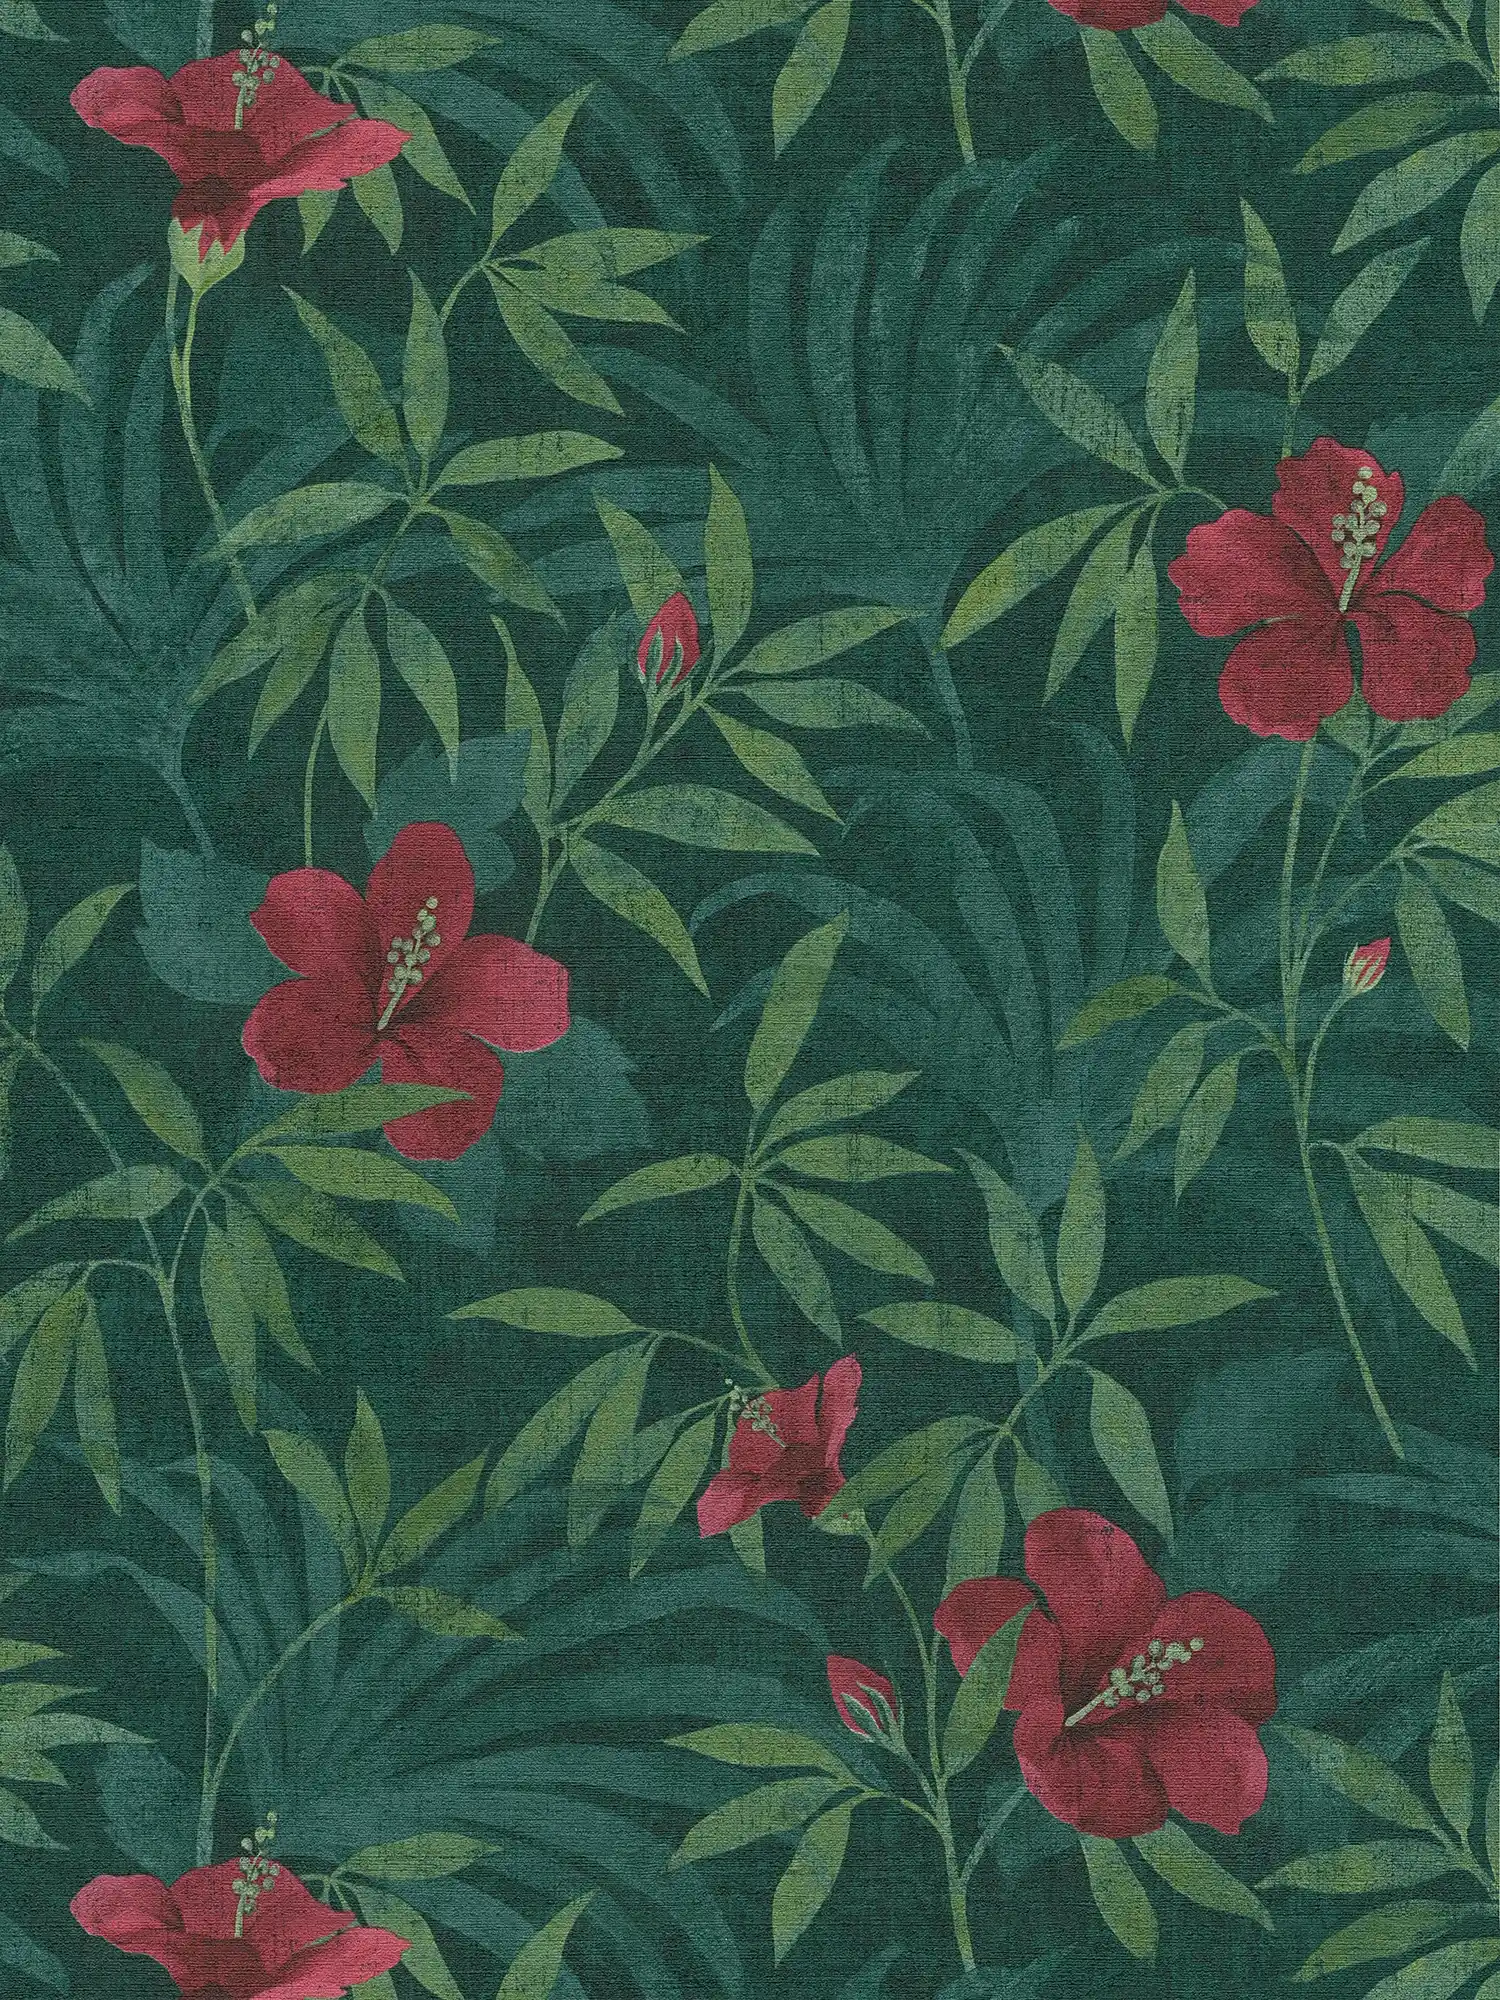 Jungle behang groene jungle & hibiscus bloemen - groen, rood
